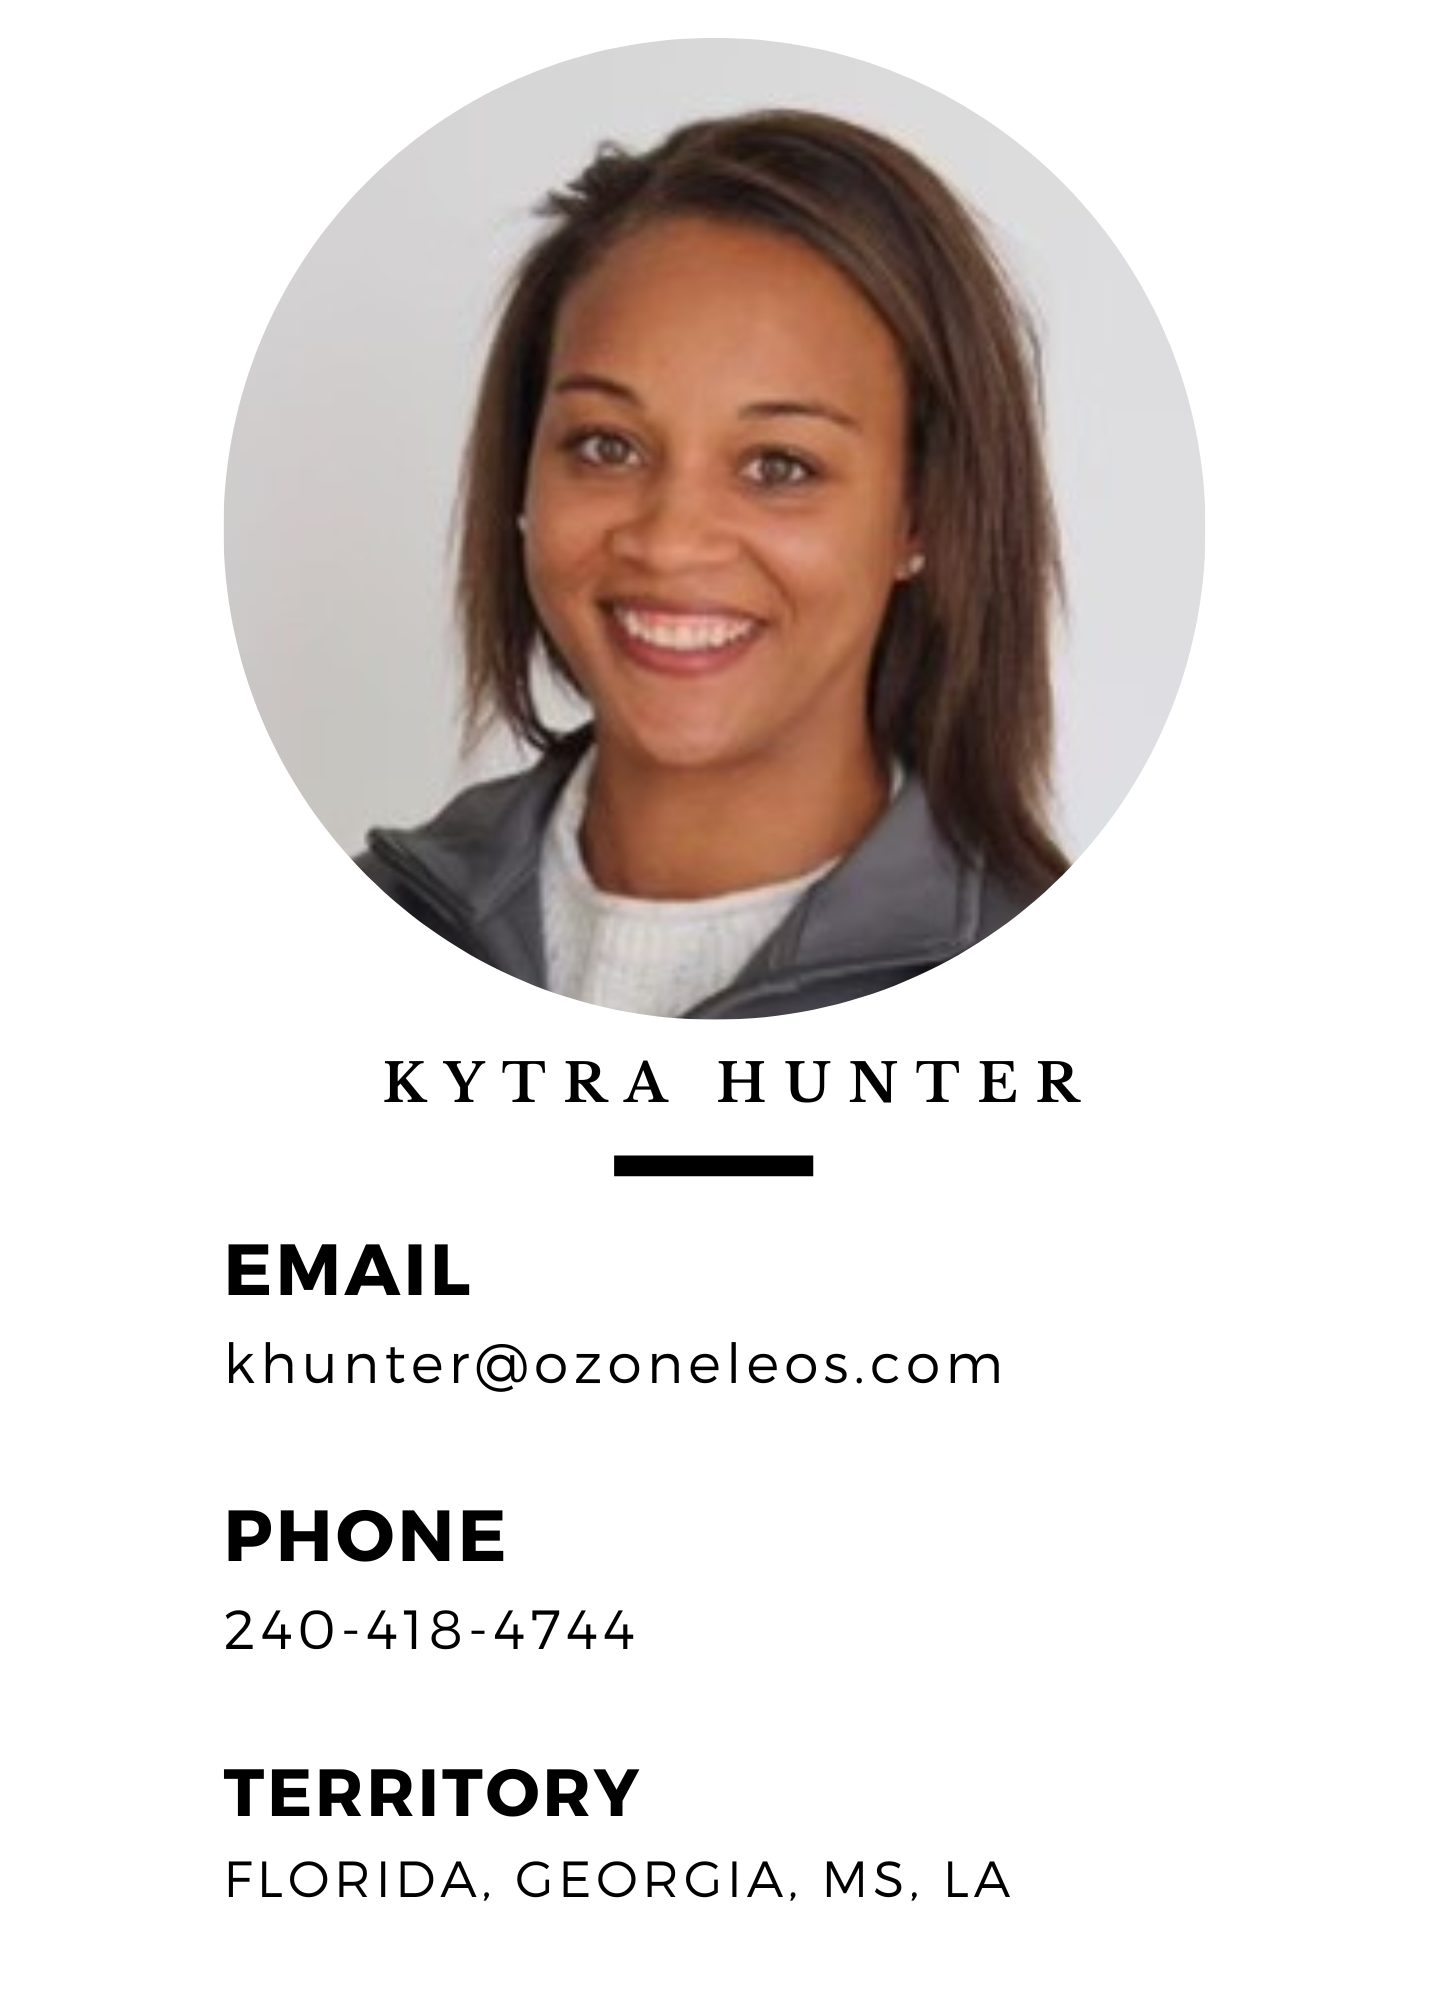 Kytra Hunter